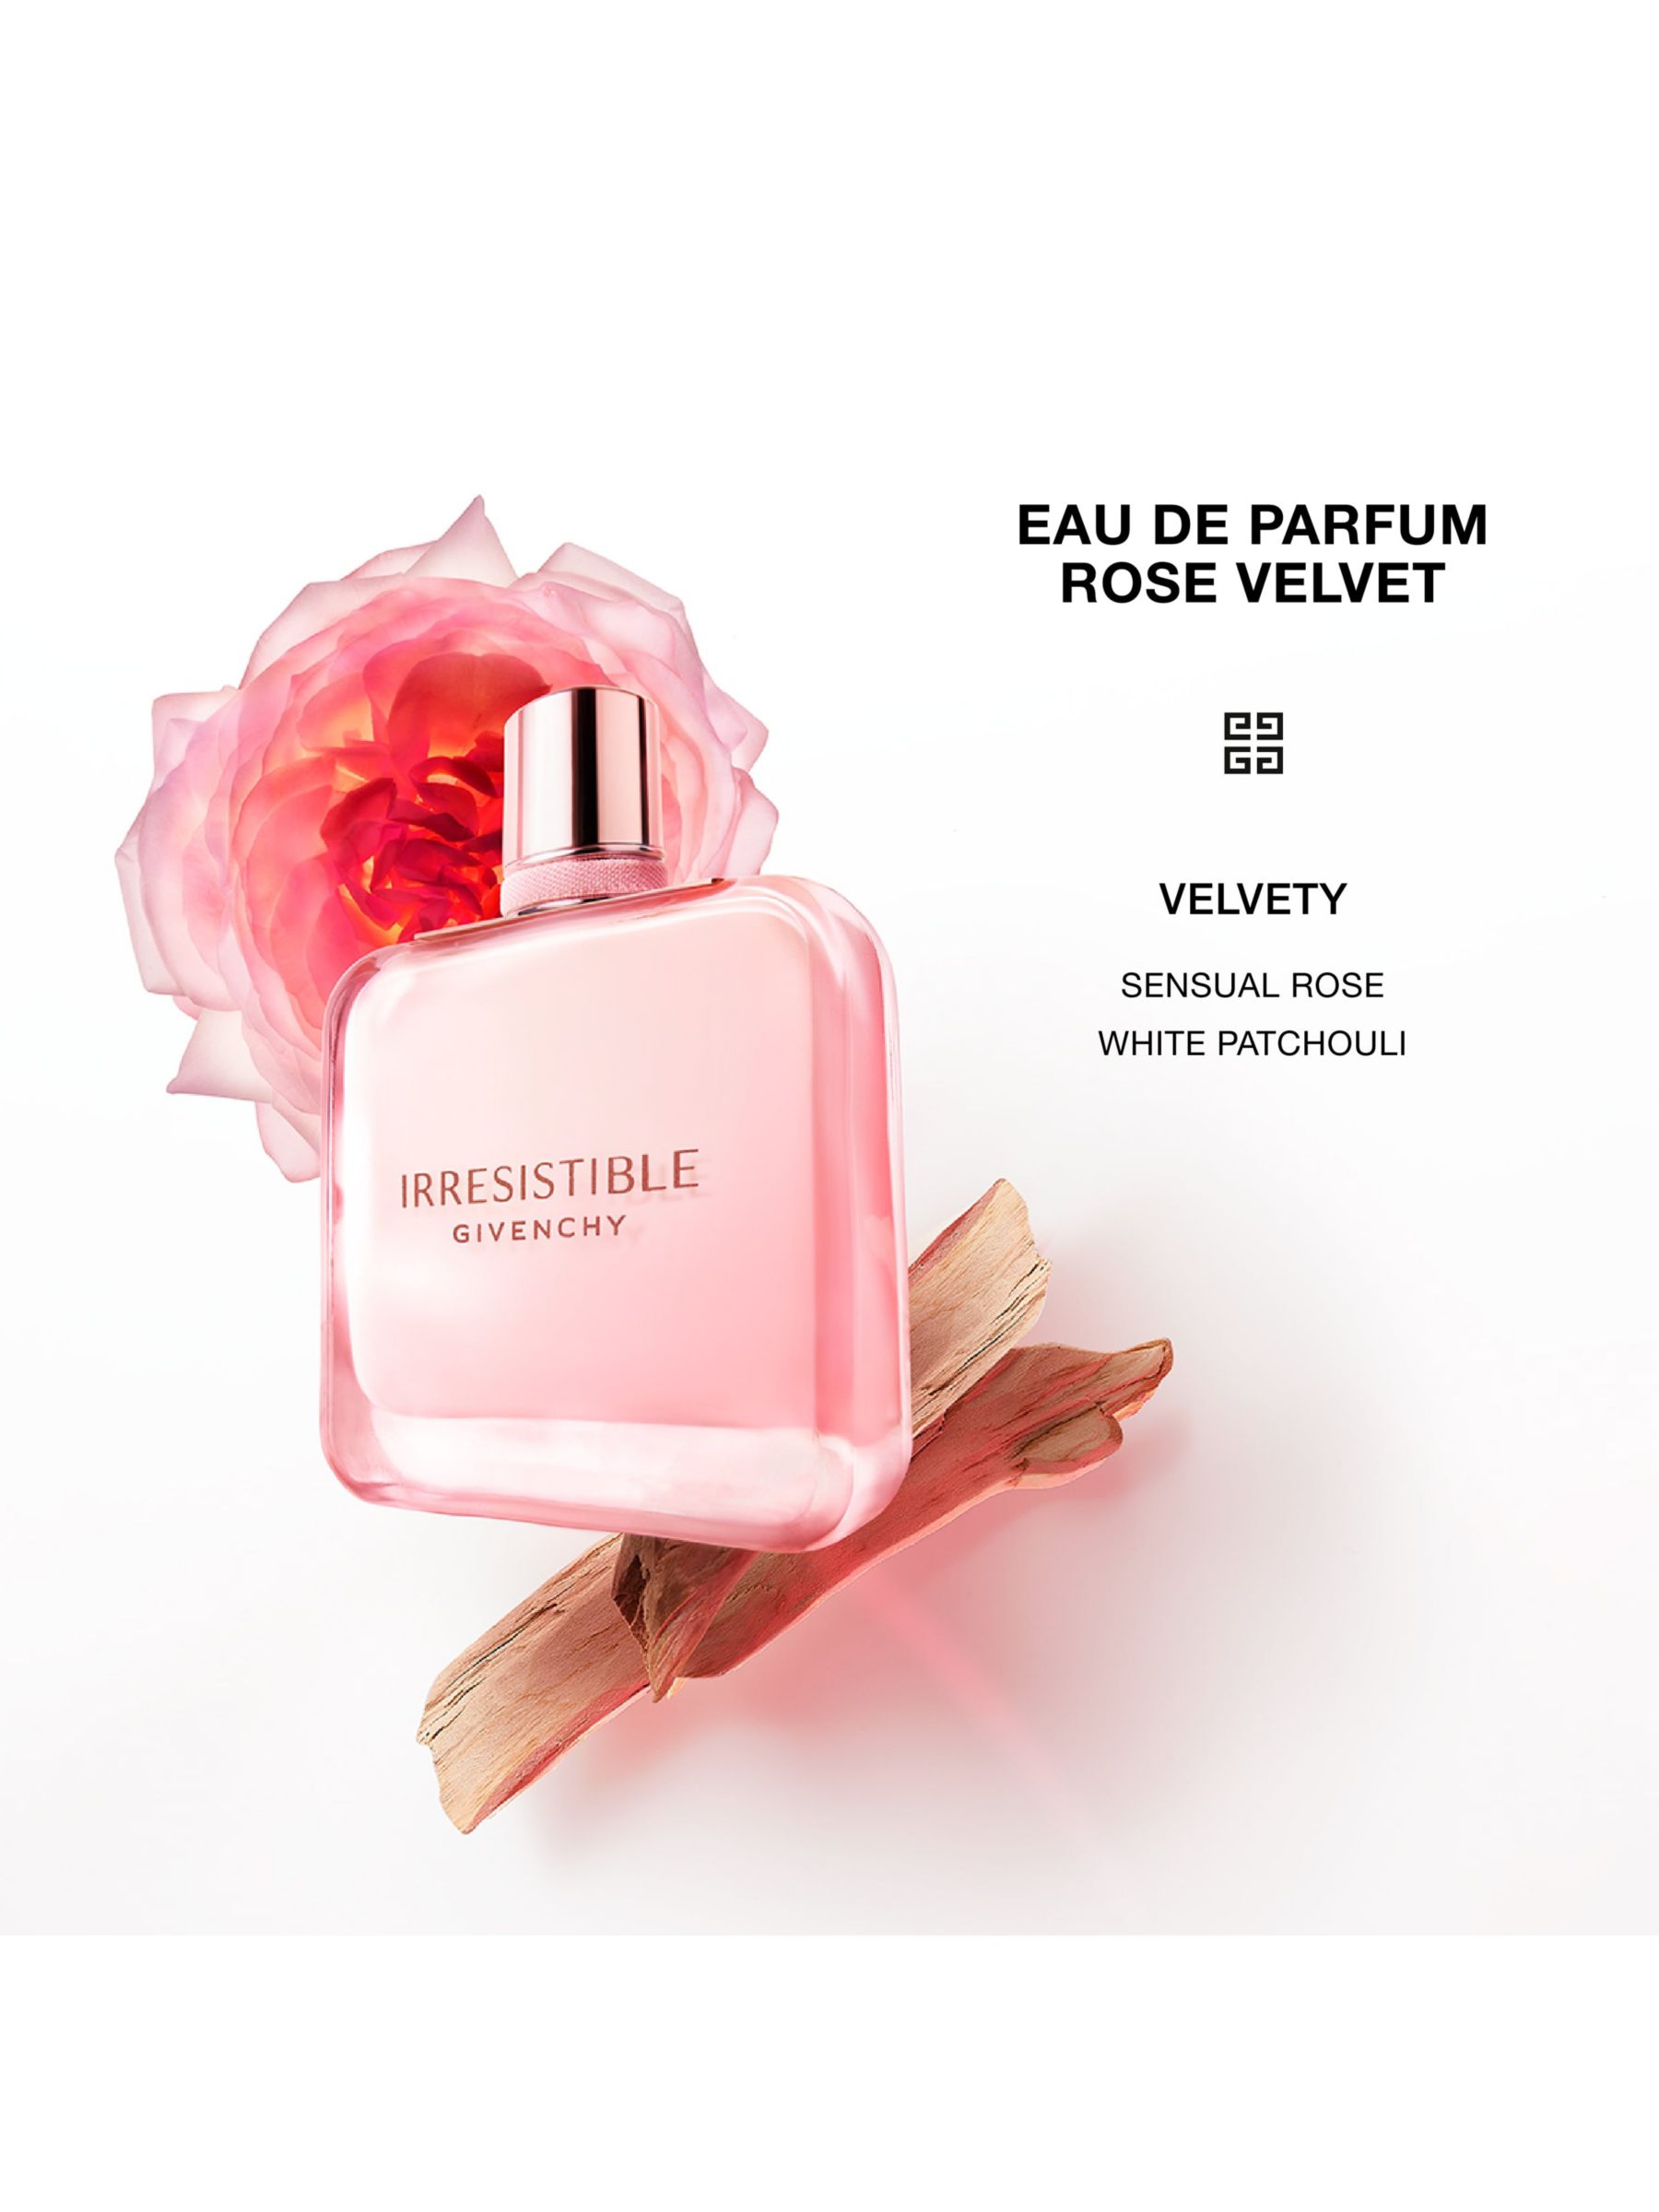 Givenchy Irresistible Rose Velvet Eau de Parfum, 35ml 3